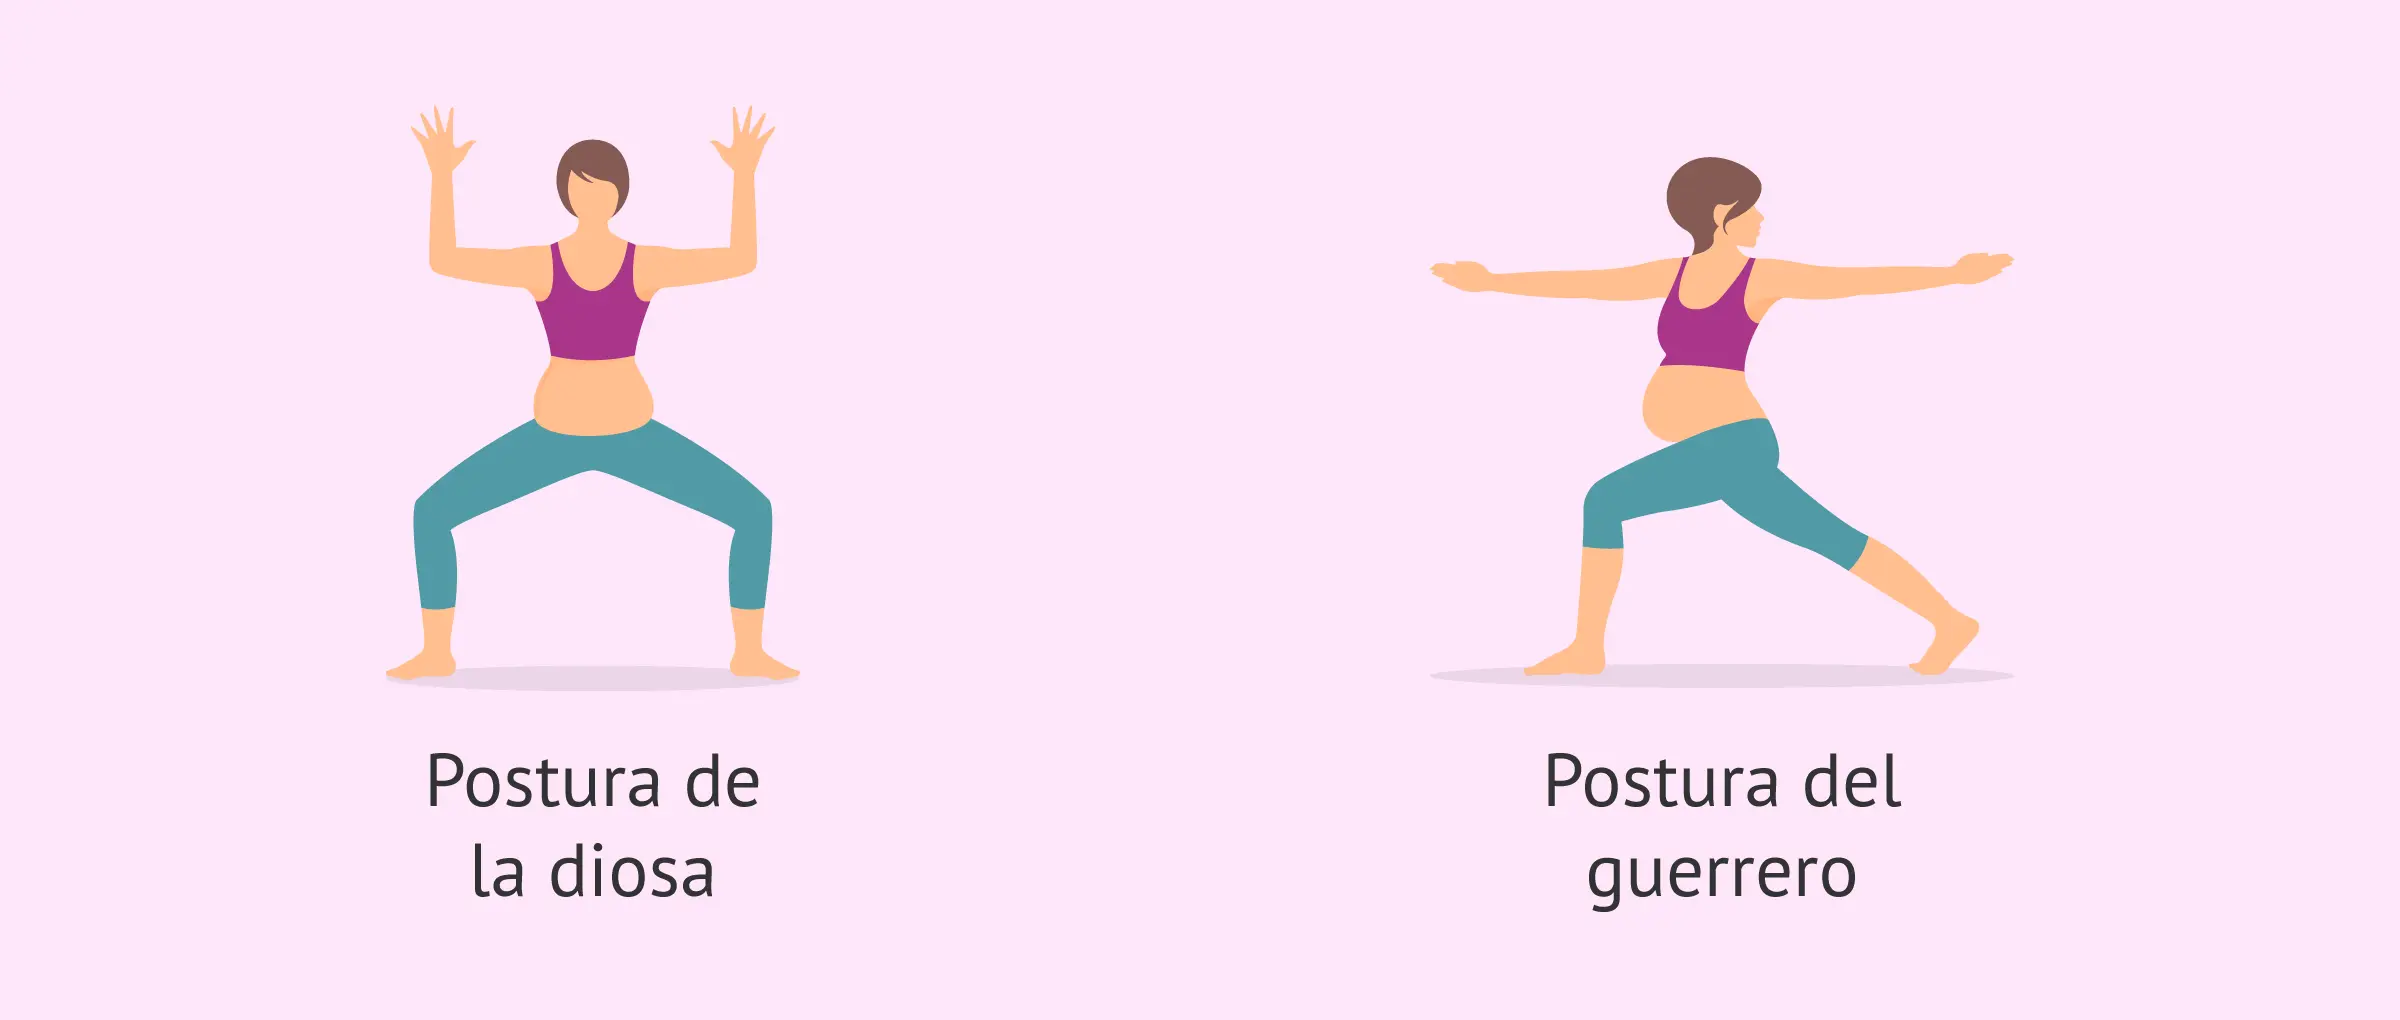 ejercicios de yoga para embarazadas tercer trimestre - Qué ejercicios puede hacer una embarazada en el tercer trimestre